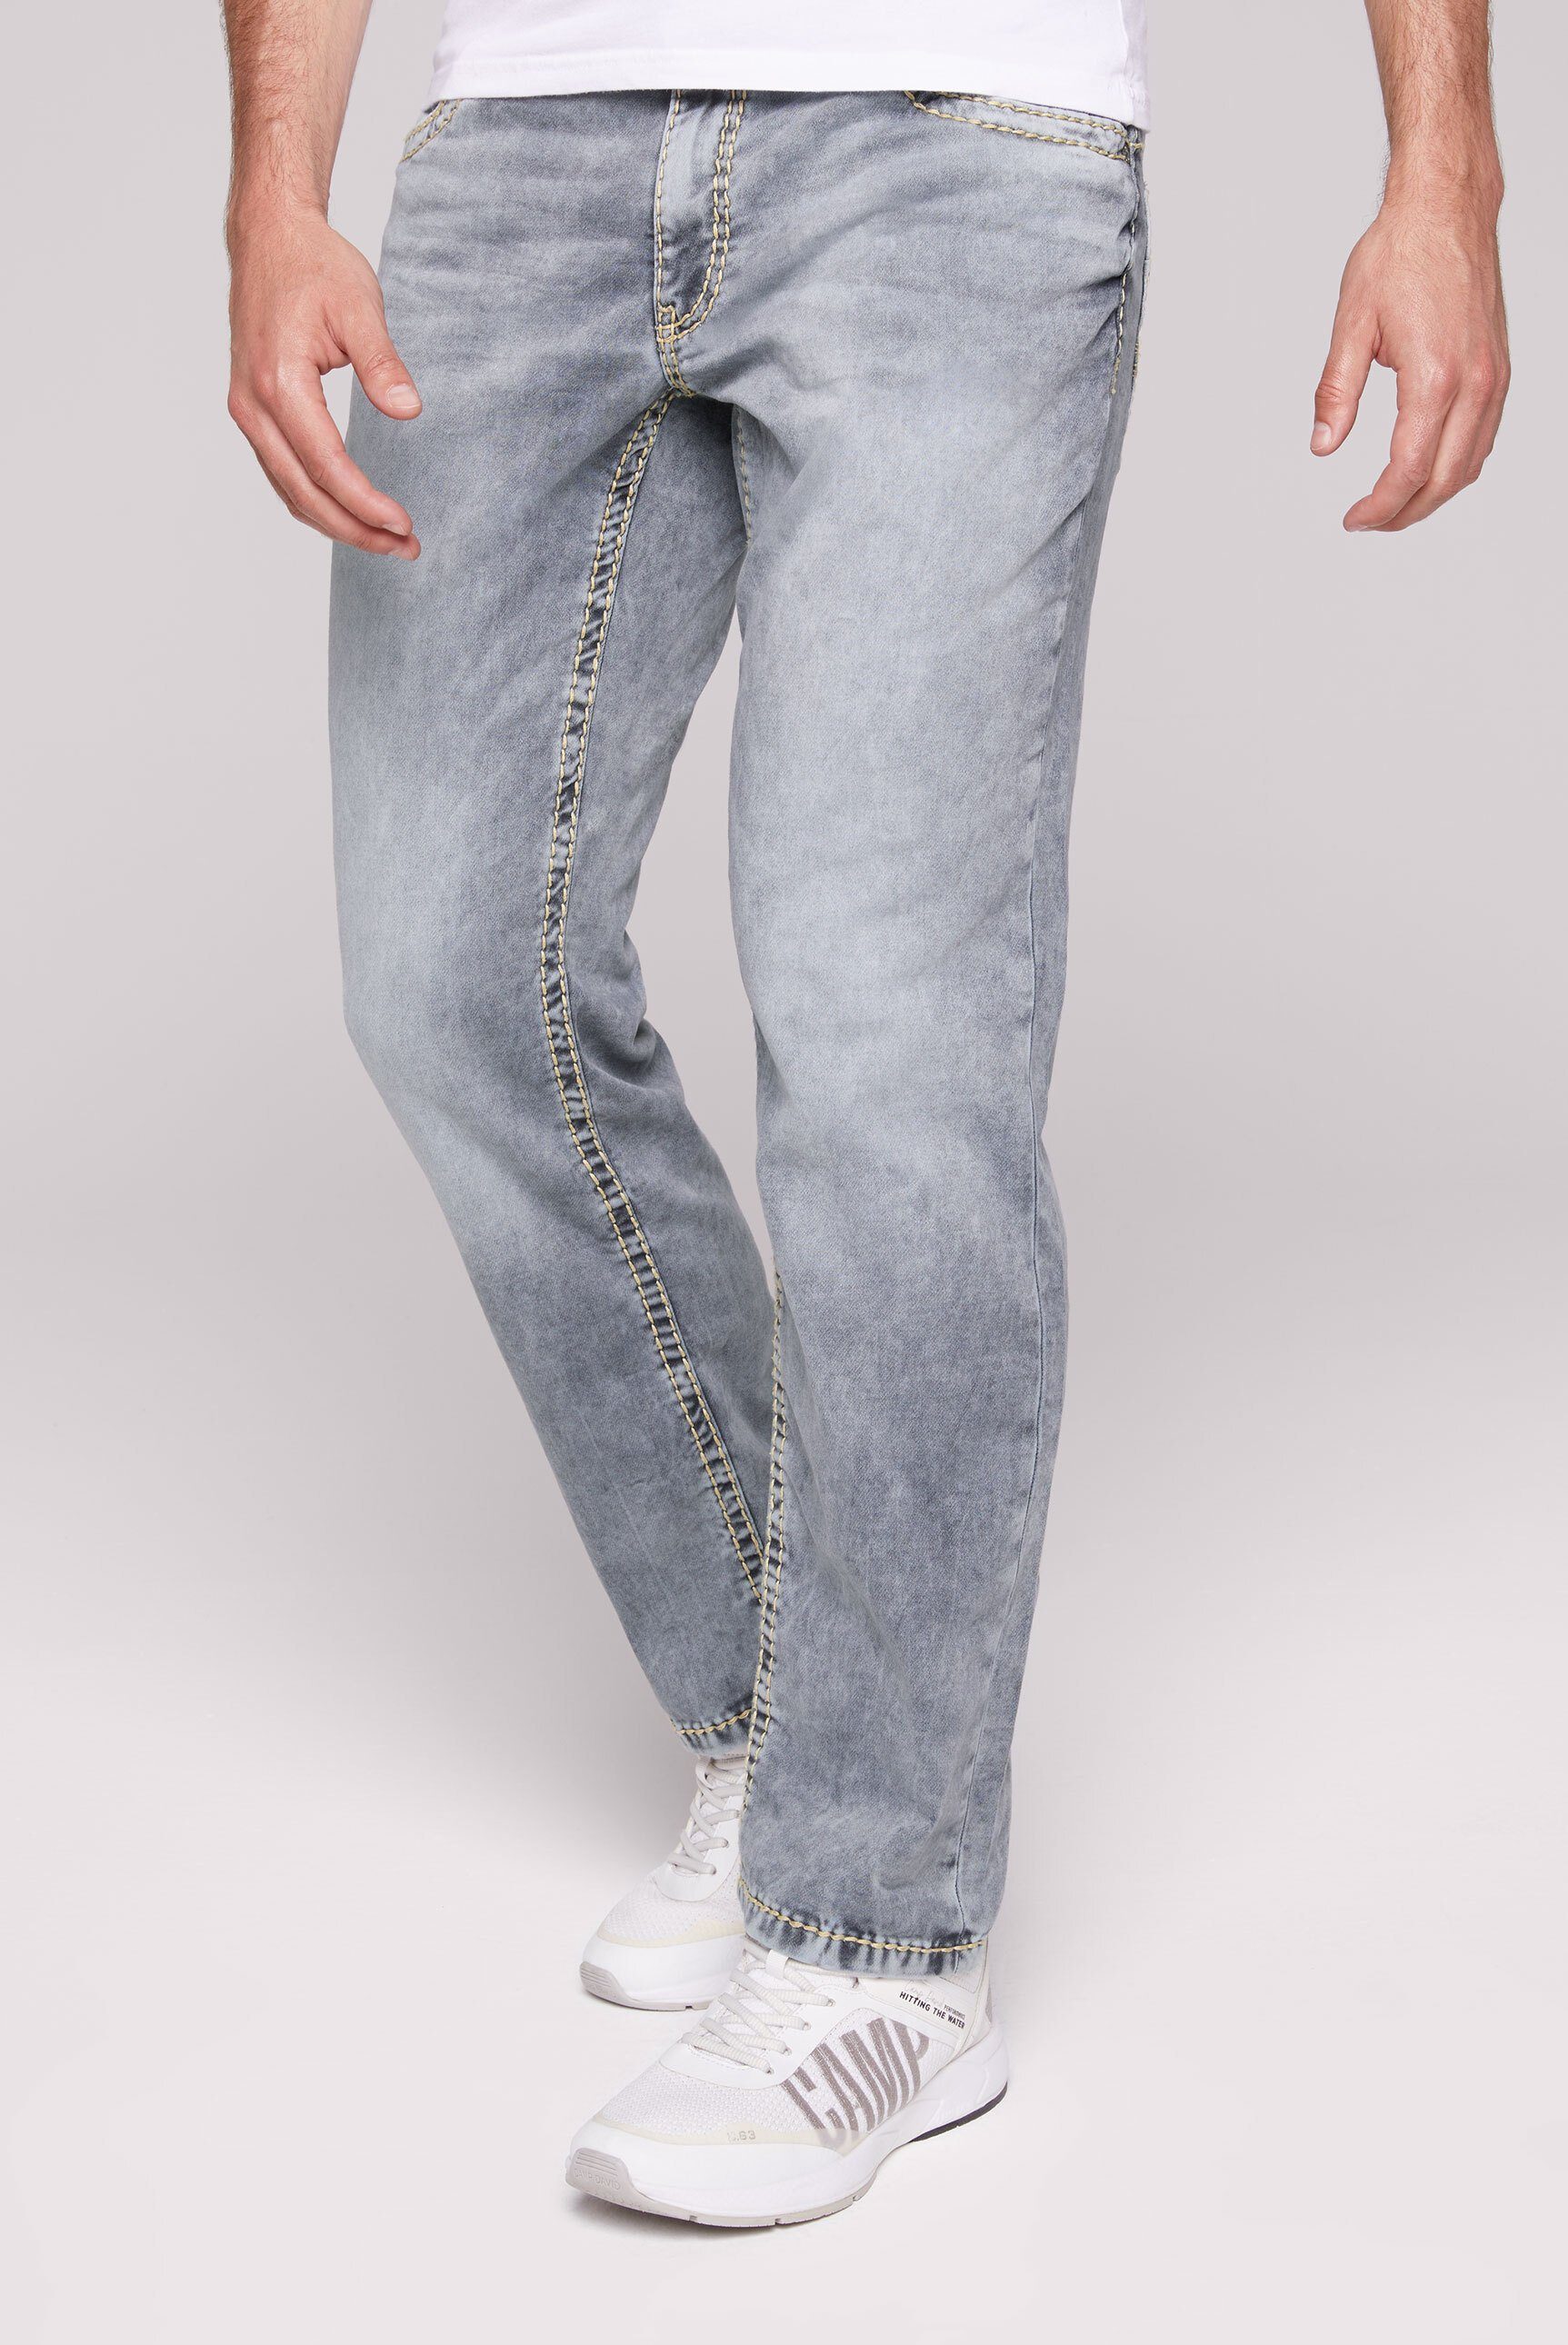 CAMP DAVID Comfort-fit-Jeans mit breiten Nähten, Leibhöhe: vorne niedrig,  hinten hoch